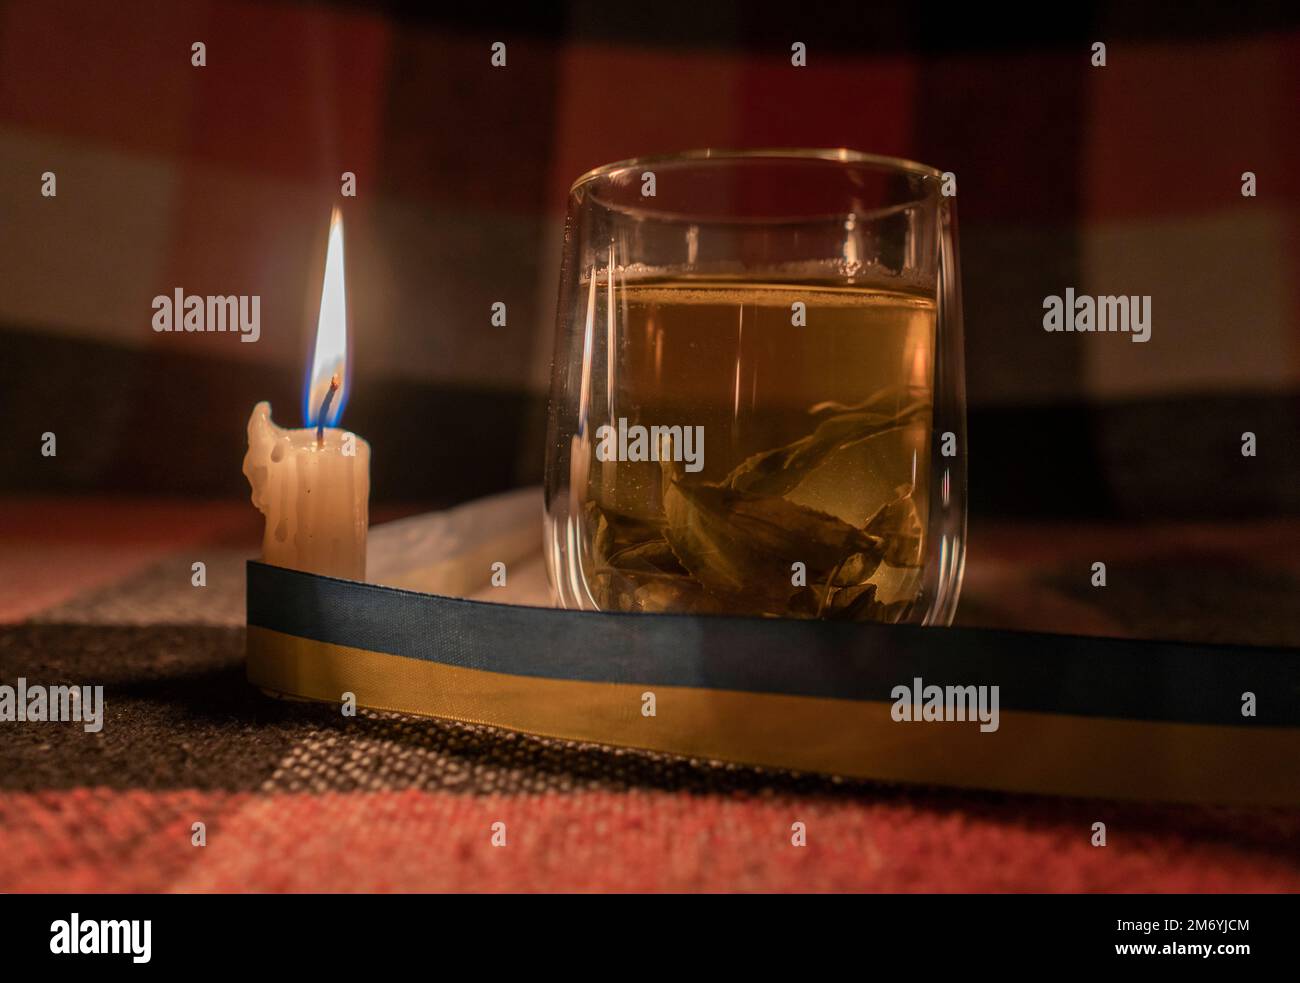 Stromausfall. Stromausfallkonzept. Transparente Tasse Kräutertee im Licht einer brennenden Kerze mit einem gelb-blauen Band (nationales Symbol der Ukraine) Stockfoto